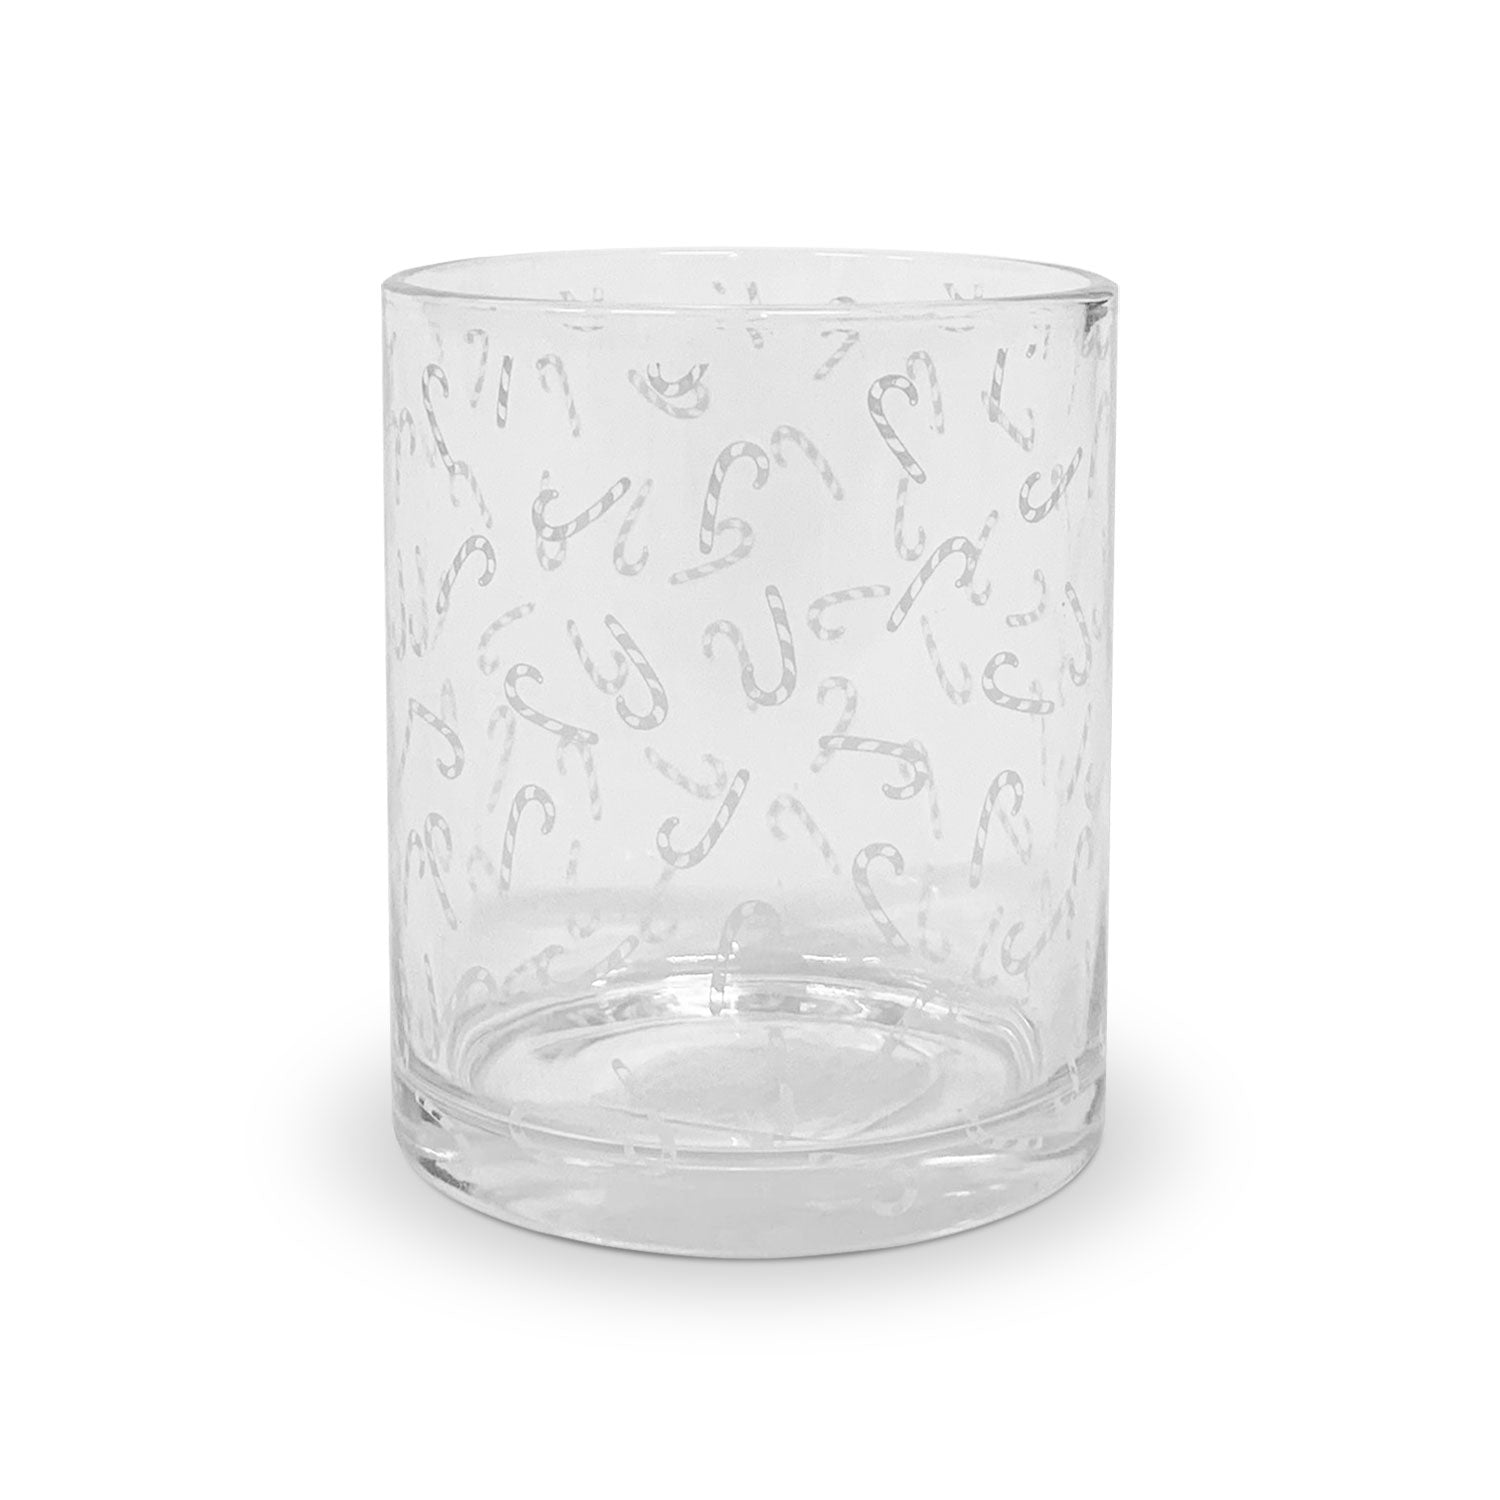 Bicchieri da acqua natalizi Nuvole di Stoffa in vetro con decori natale 6pz 5711